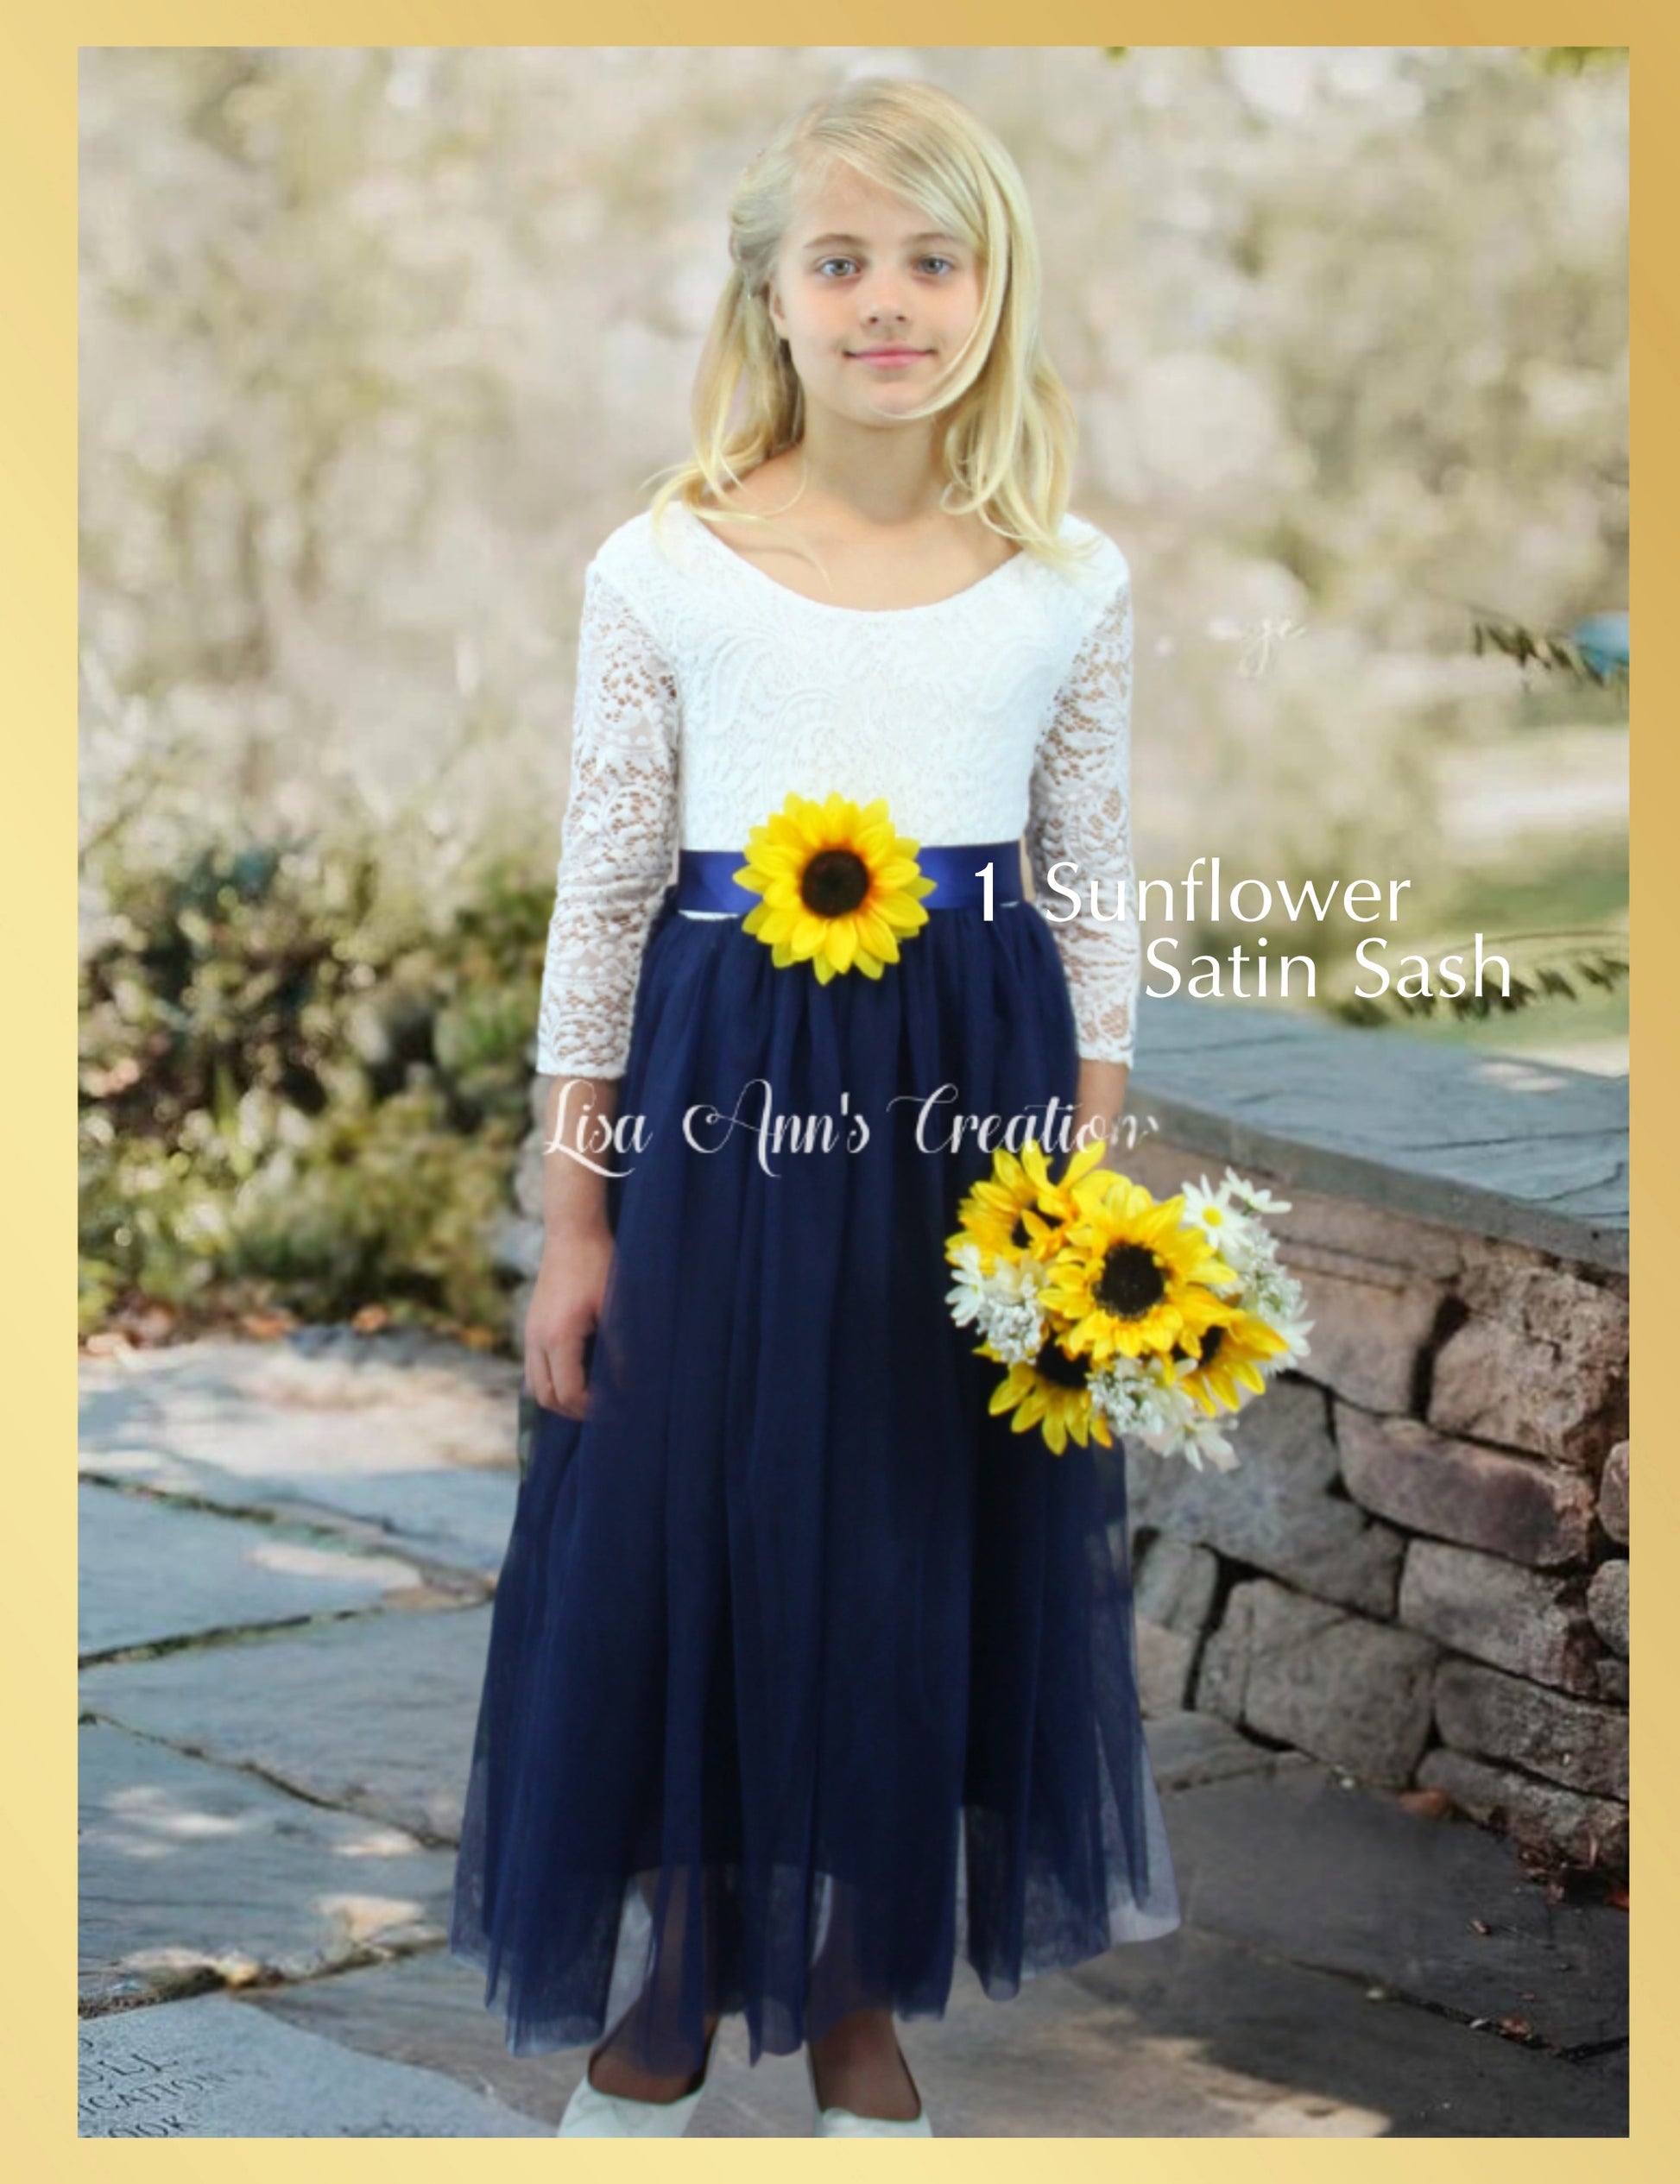 Sunflower flower girl dress